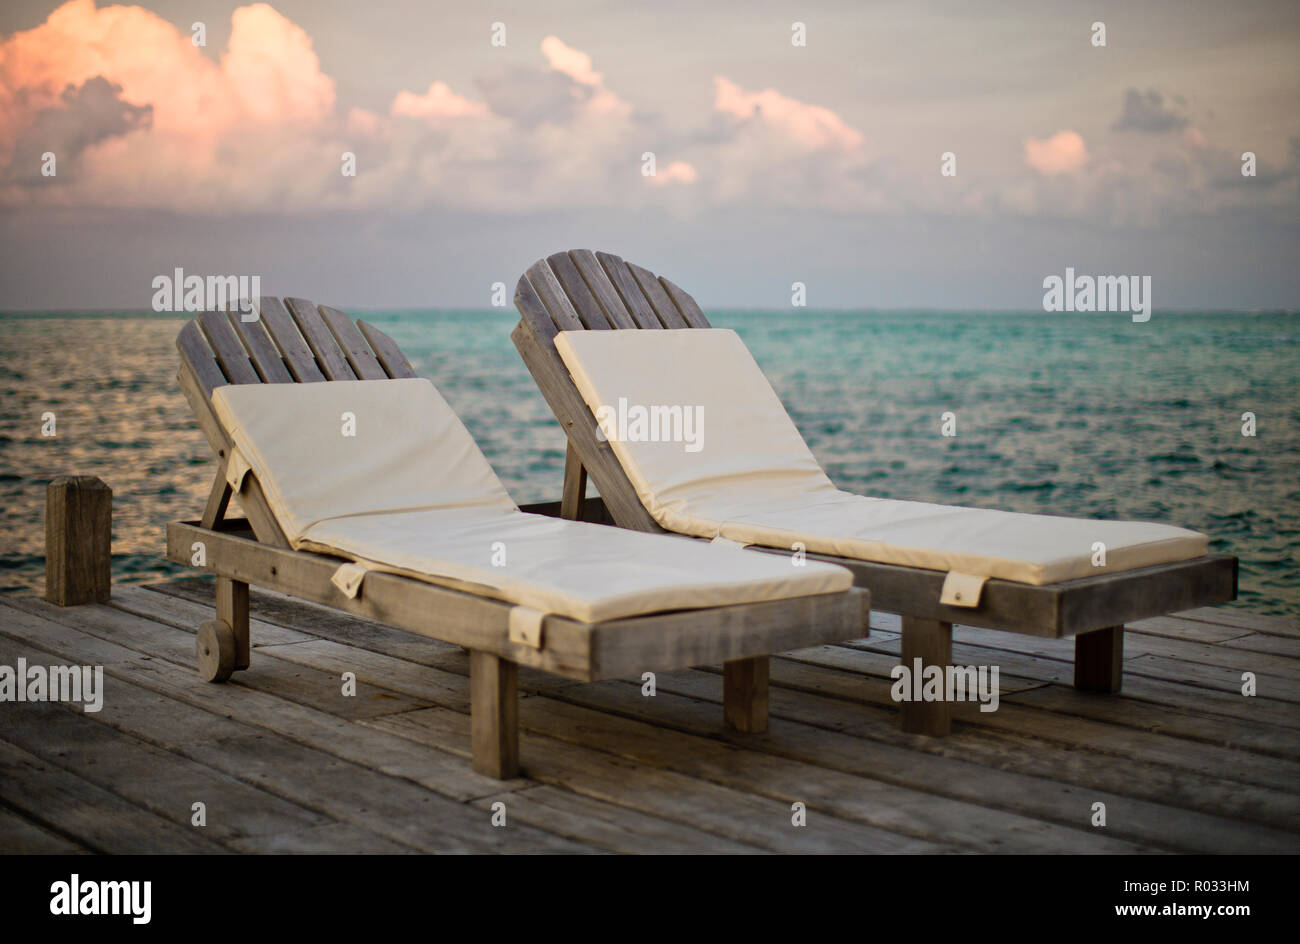 Vuoto due sedie a sdraio fianco a fianco su una banchina in legno. Foto Stock